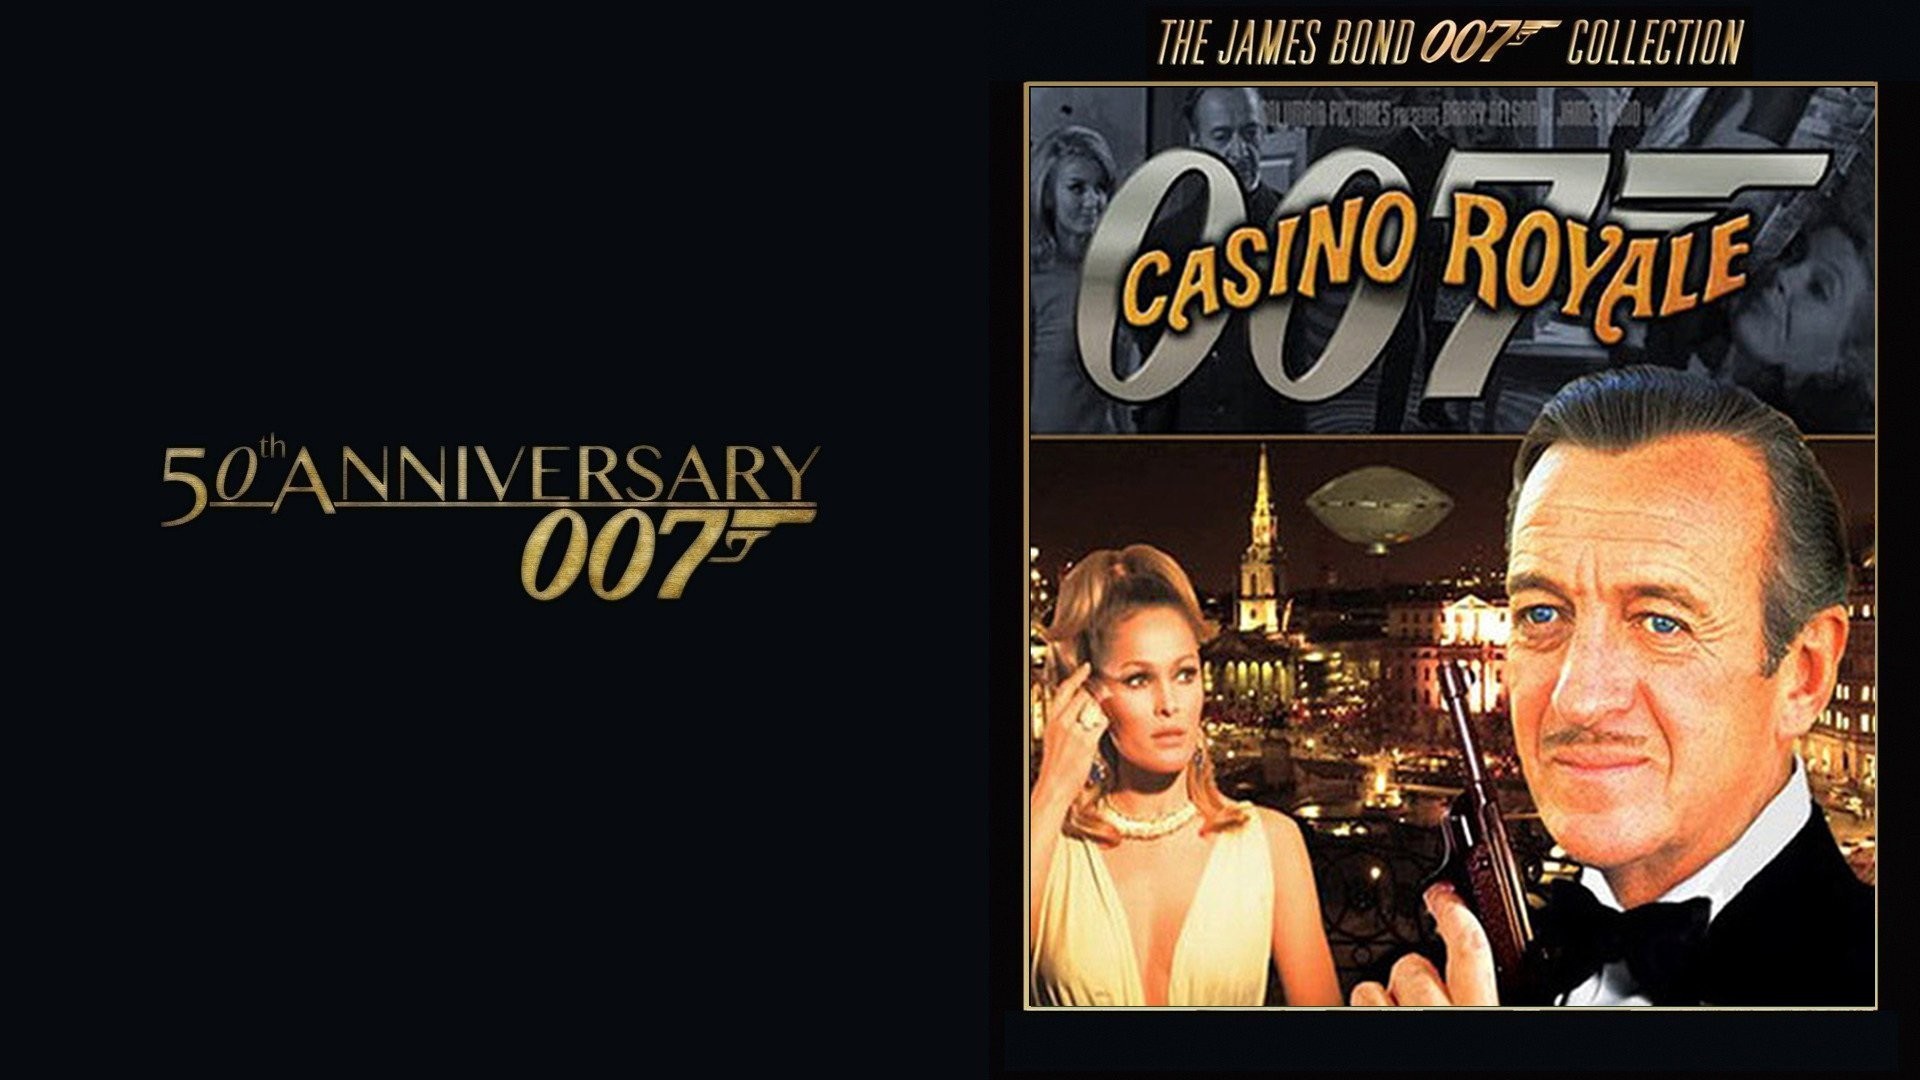 1920x1080 Casino Royale Image 1